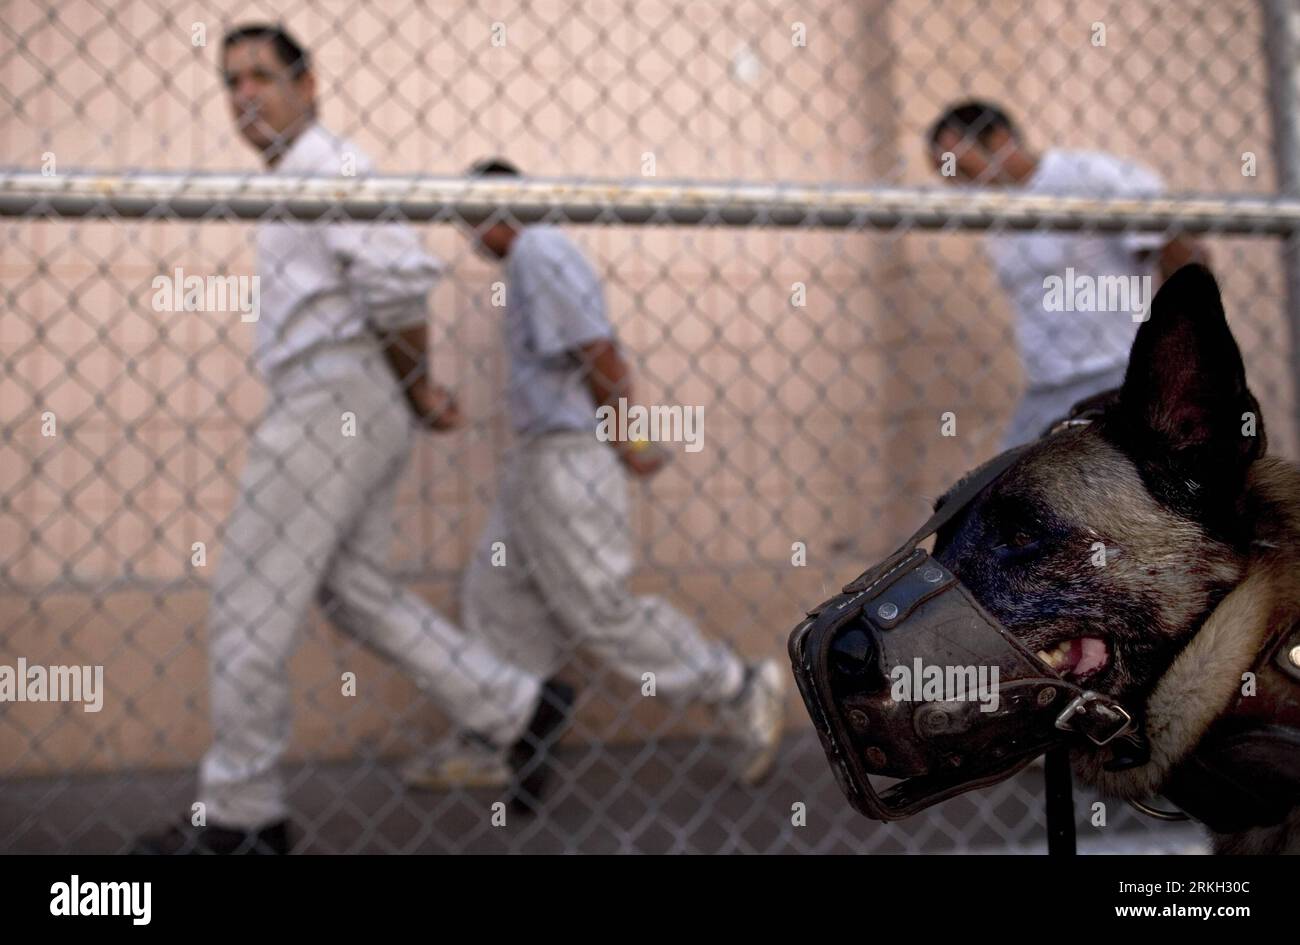 Bildnummer: 55679958 Datum: 04.08.2011 Copyright: imago/Xinhua (110805) -- TIJUANA, 5 agosto 2011 (Xinhua) -- i detenuti camminano nel Centro di riabilitazione sociale (Cereso) la Mesa, a Tijuana, Messico nordoccidentale, il 4 agosto 2011. Le autorità carcerarie hanno annunciato l'installazione di un'inibizione delle cellule, nonché nuove misure di sicurezza e il rinnovo dell'area di ingresso della prigione. (Xinhua/Guillermo Arias) (zx) MESSICO-TIJUANA-PRISON PUBLICATIONxNOTxINxCHN Gesellschaft Gefängnis JVA Justiz xbs 2011 quer o0 Häftling Hund Wachhund Maulkorb Tier Bildnummer 55679958 Date 04 08 2011 Copyright Imago XINHUA Foto Stock